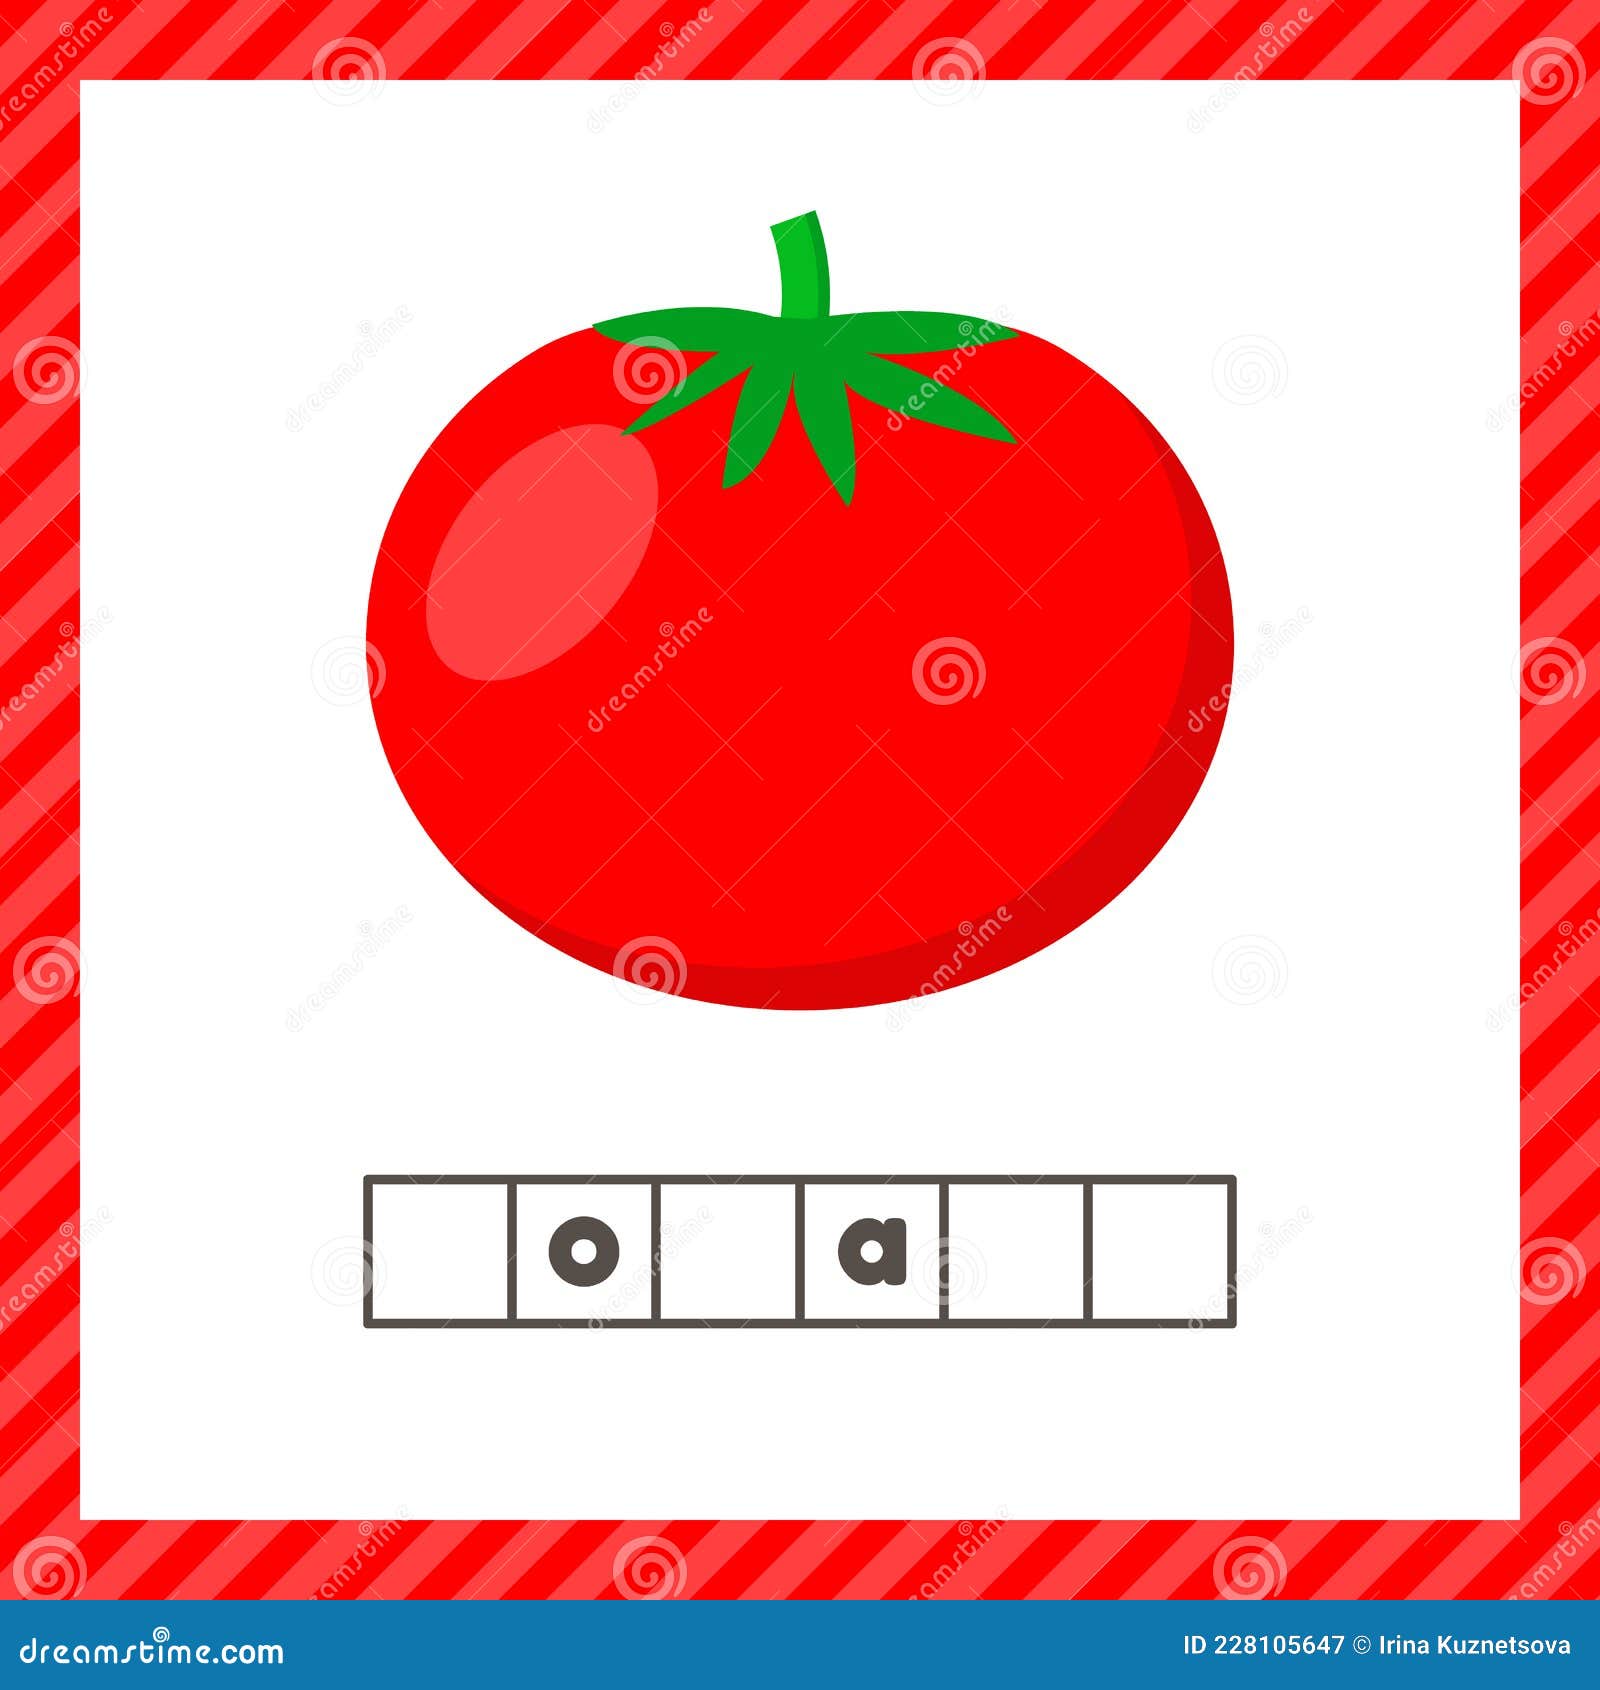 猜蔬菜食物对象教育游戏的卡通插图模板免费下载_eps格式_461像素_编号42355313-千图网